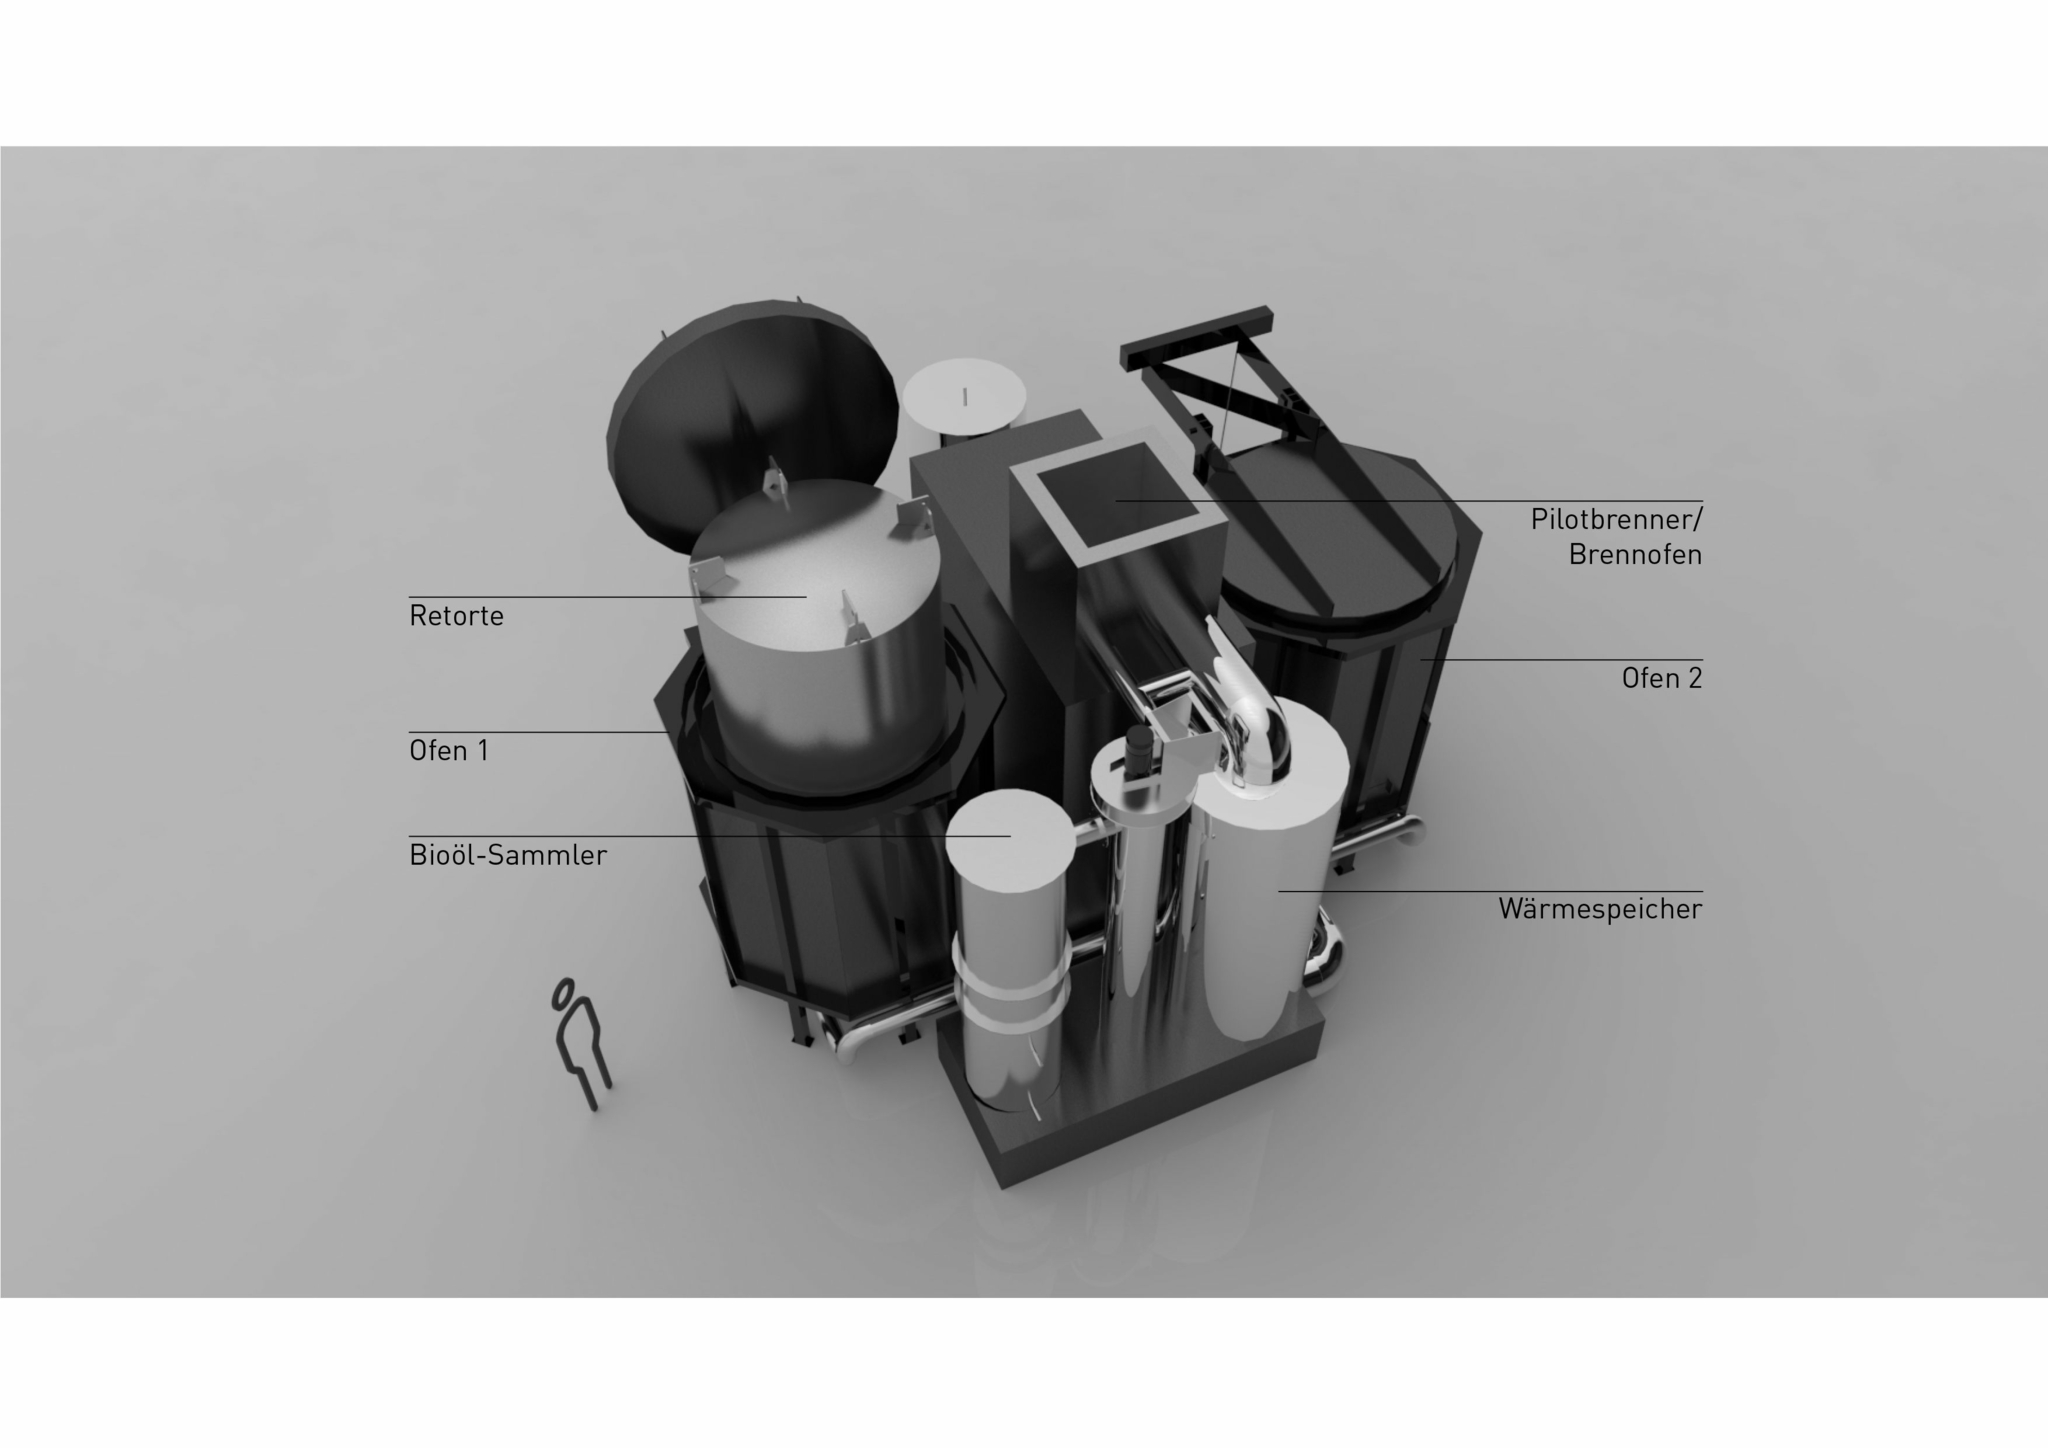 Ein Schema der Carbotwin-Anlage zeigt die einzelnen Komponenten der Anlage. Diese beinhalten die Retorte, Ofen 1, Ofen 2, Pilotbrenner, Bioöl-Sammler und Wärmespeicher. Als Maßstab ist eine menschengroße Figur neben der Anlage abgebildet.